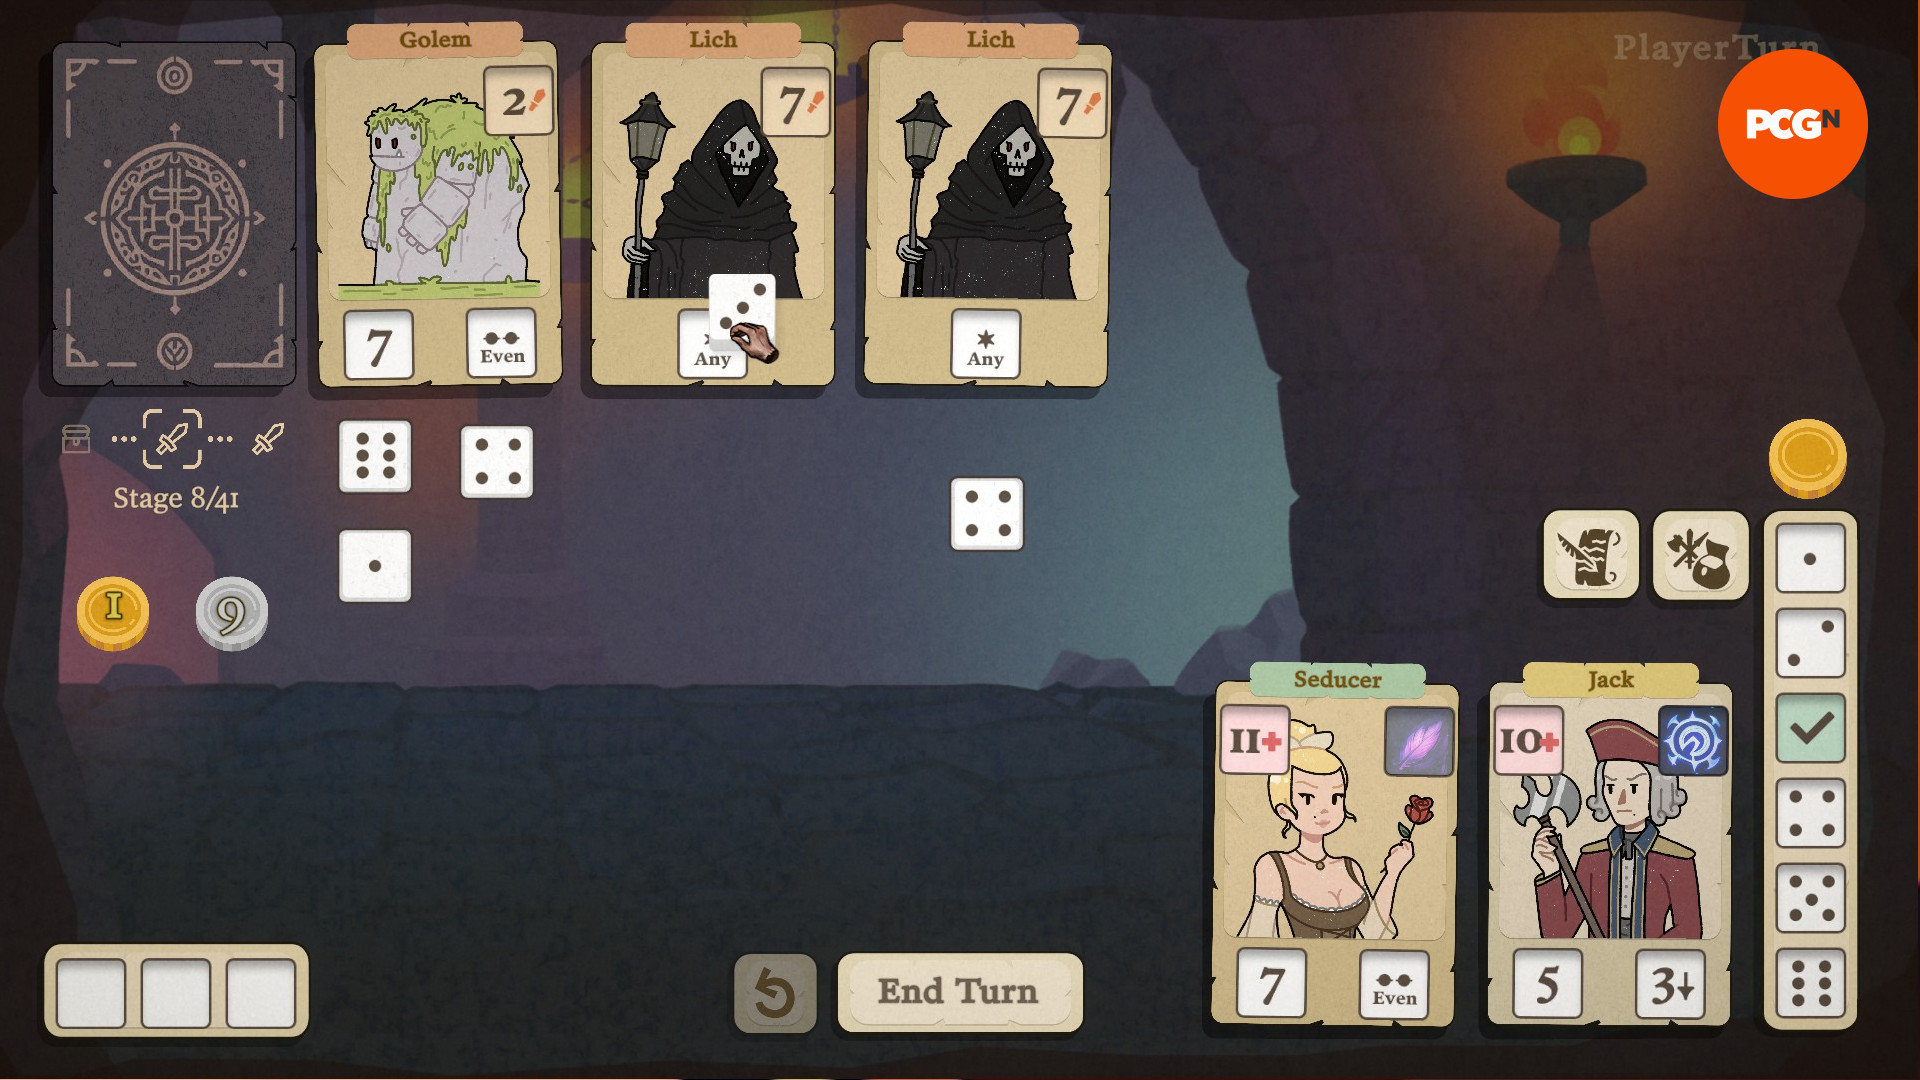 Demostración de Dice and Fold: el jugador alinea los dados para que coincidan con los enemigos que enfrenta.